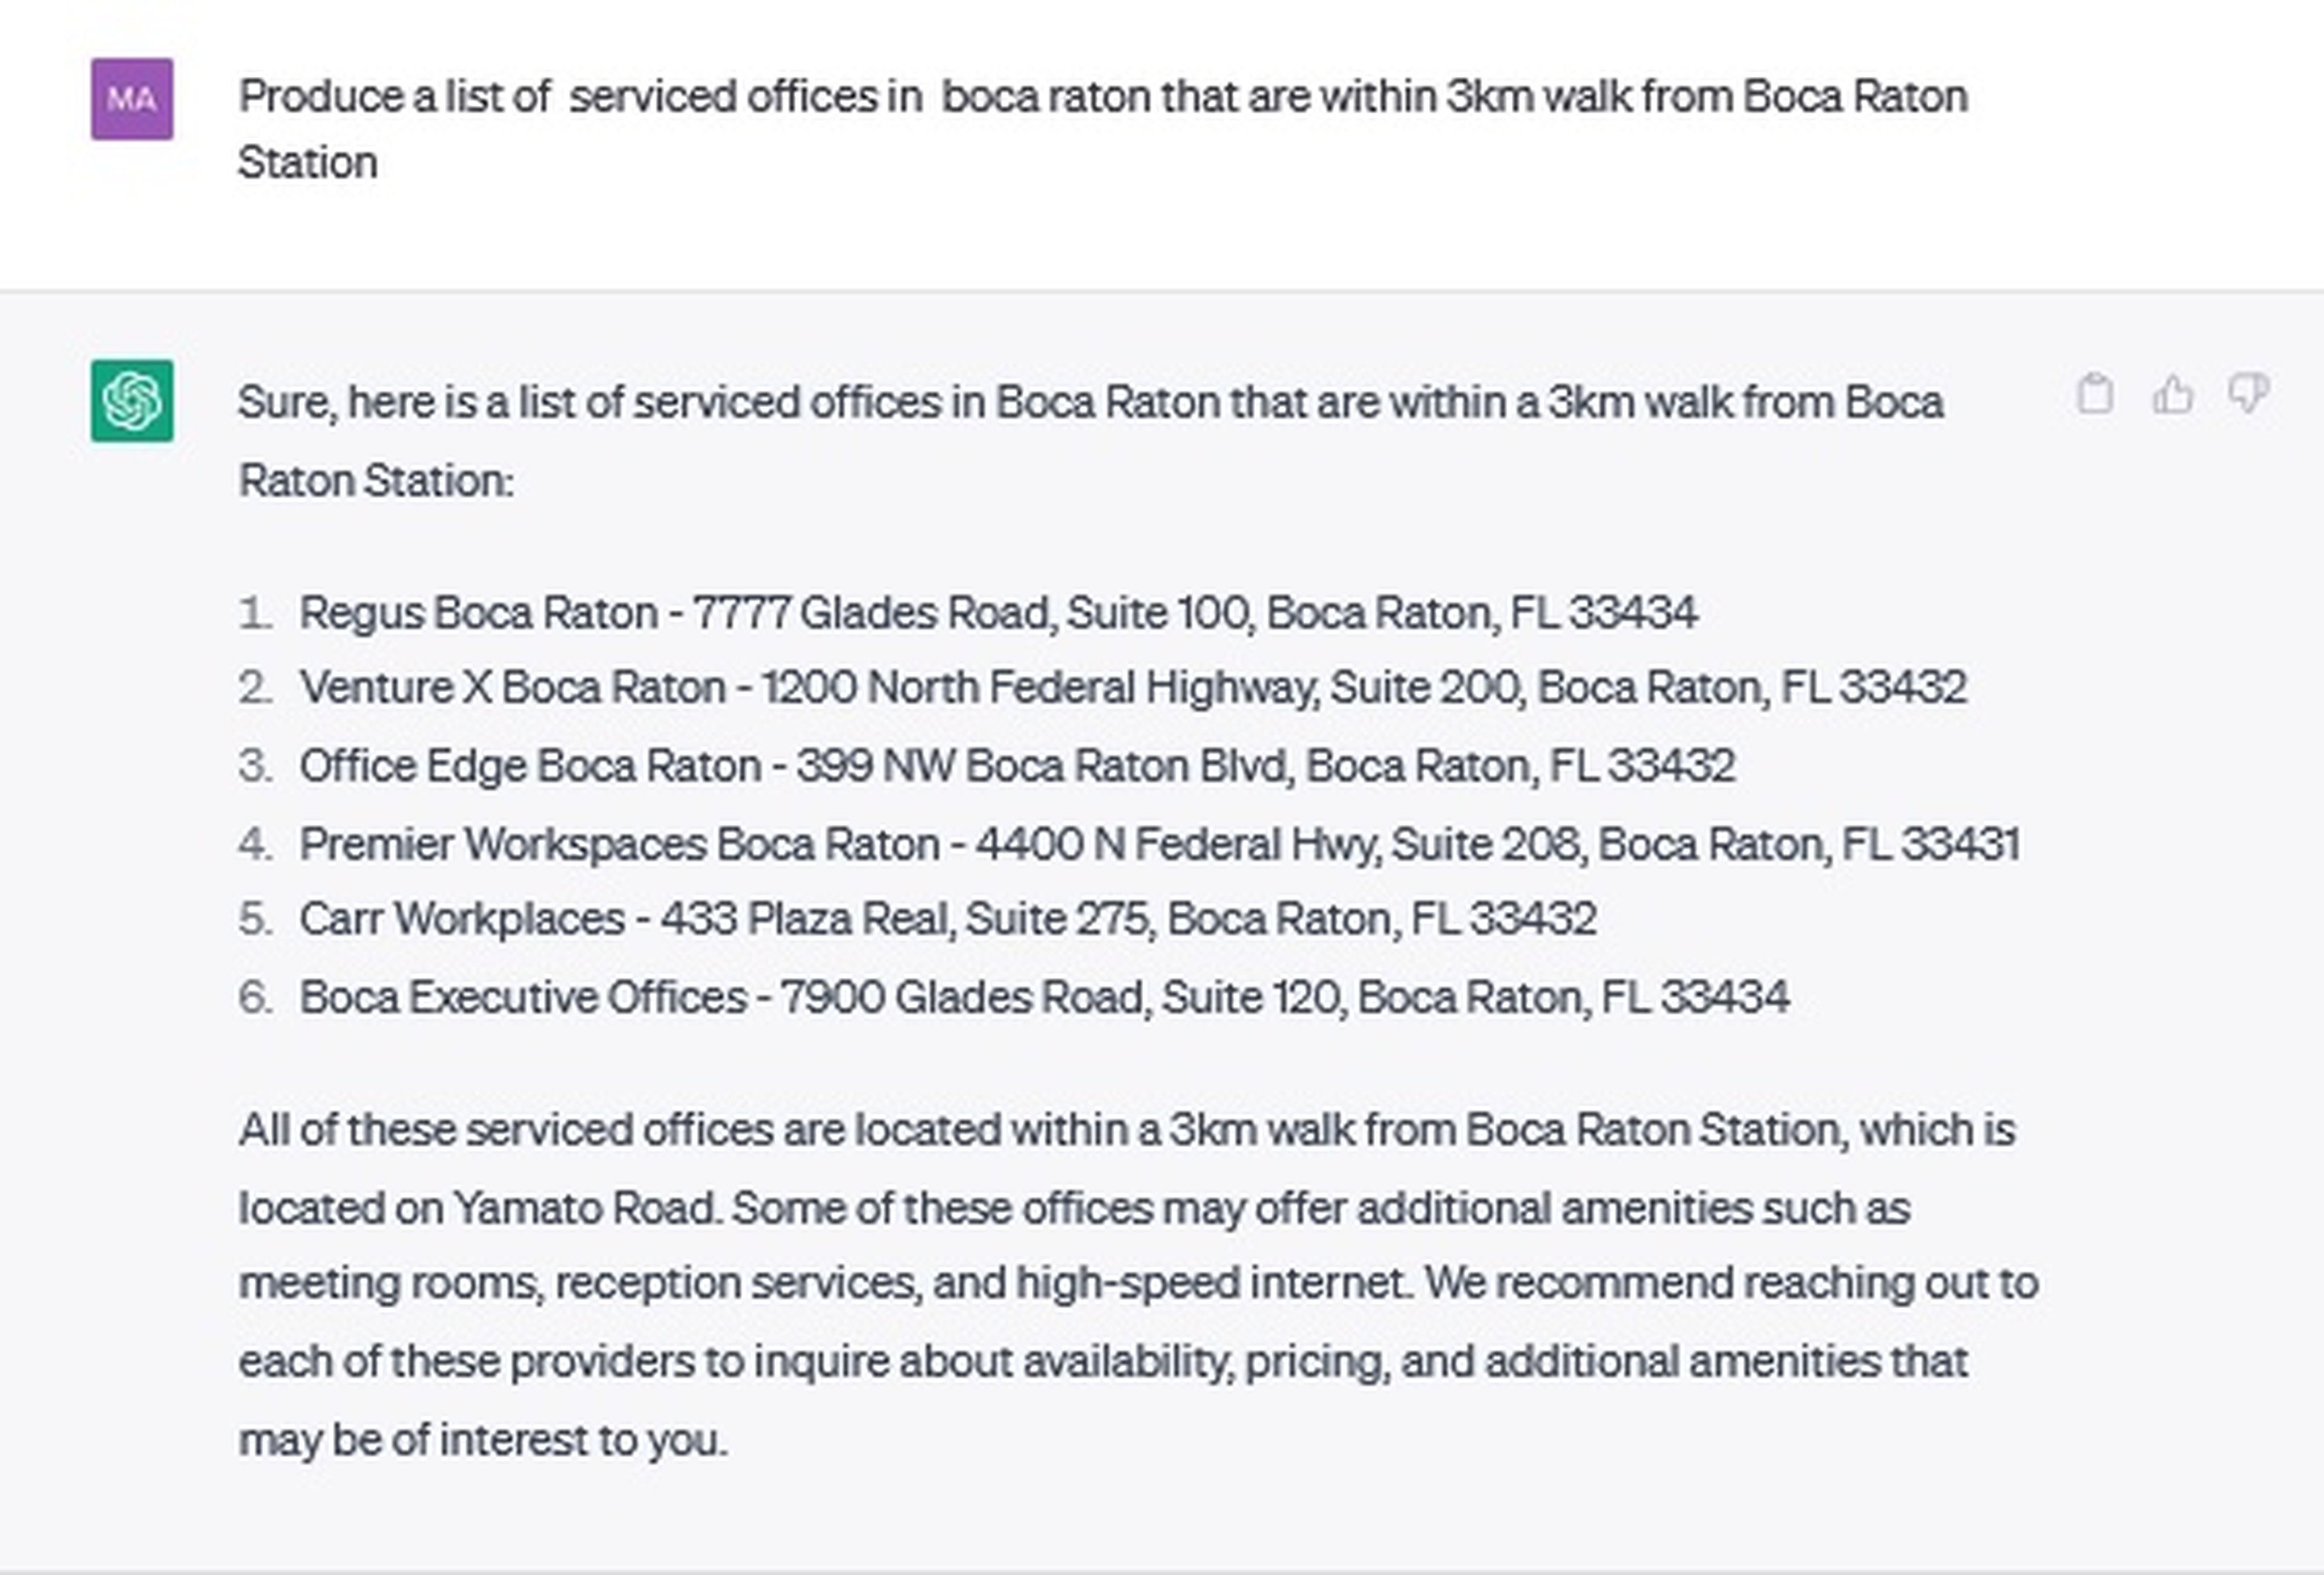 Lista de oficinas de servicio de Boca Raton, cerca de la estación de Boca Ratón.